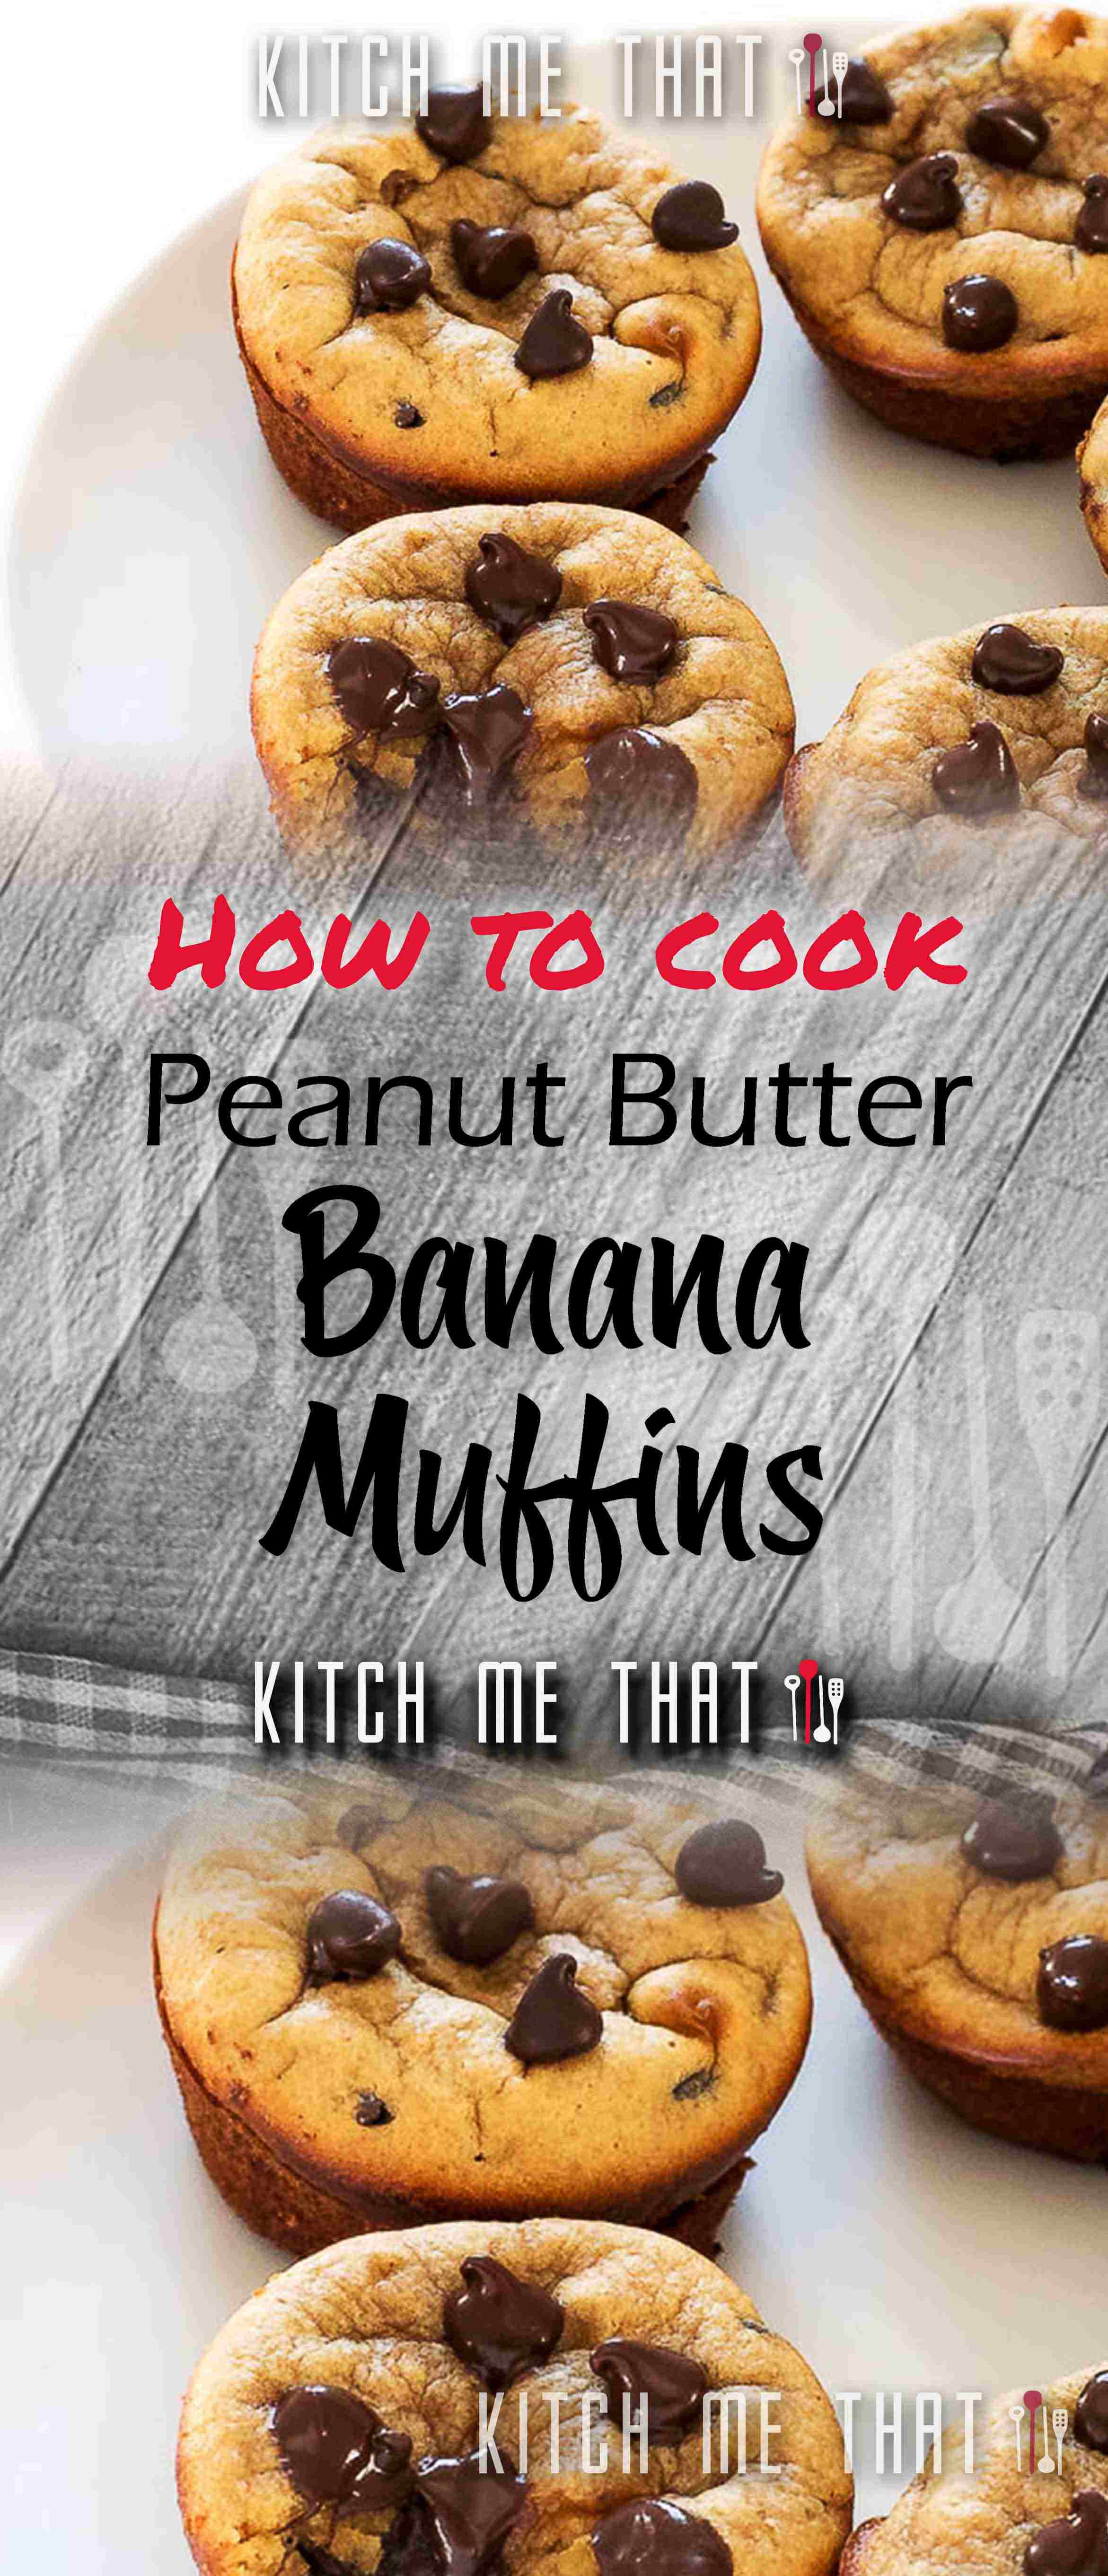 Peanut Butter Banana Muffins